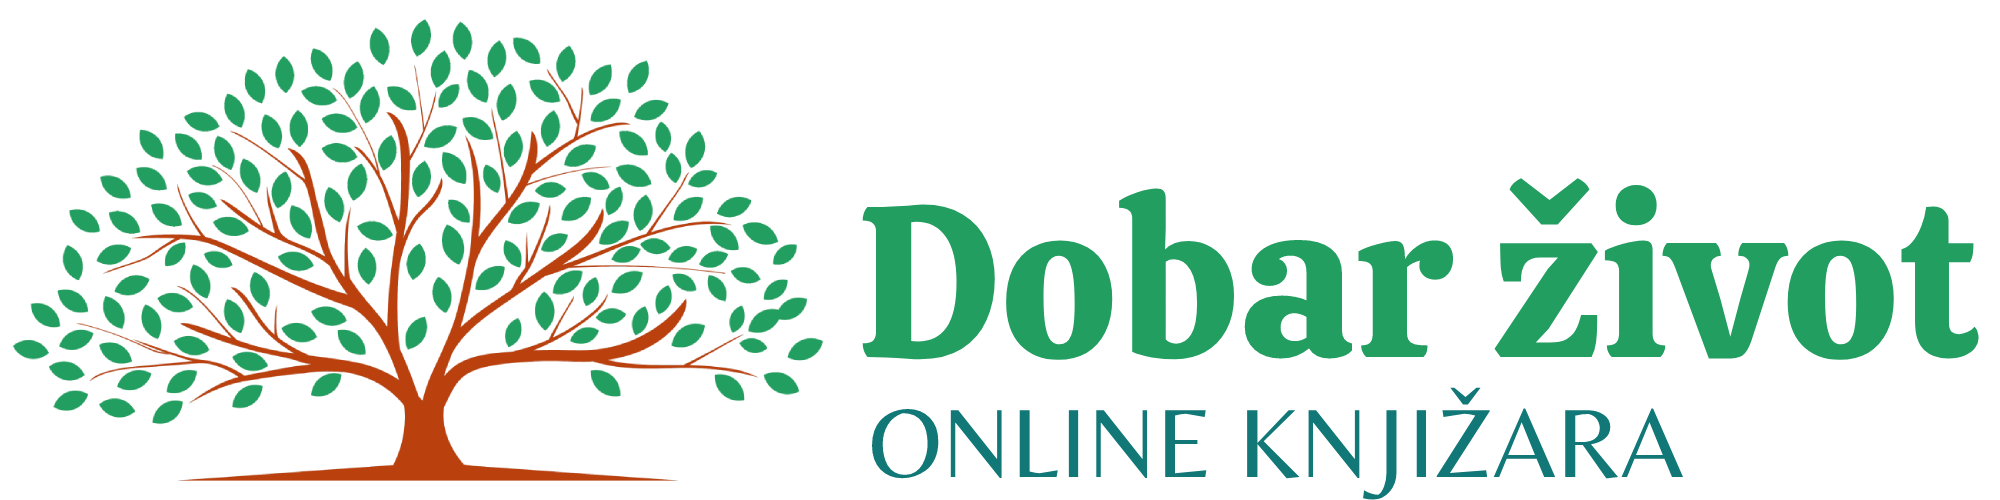 Dobarzivot.net - Lifestyle portal & webshop